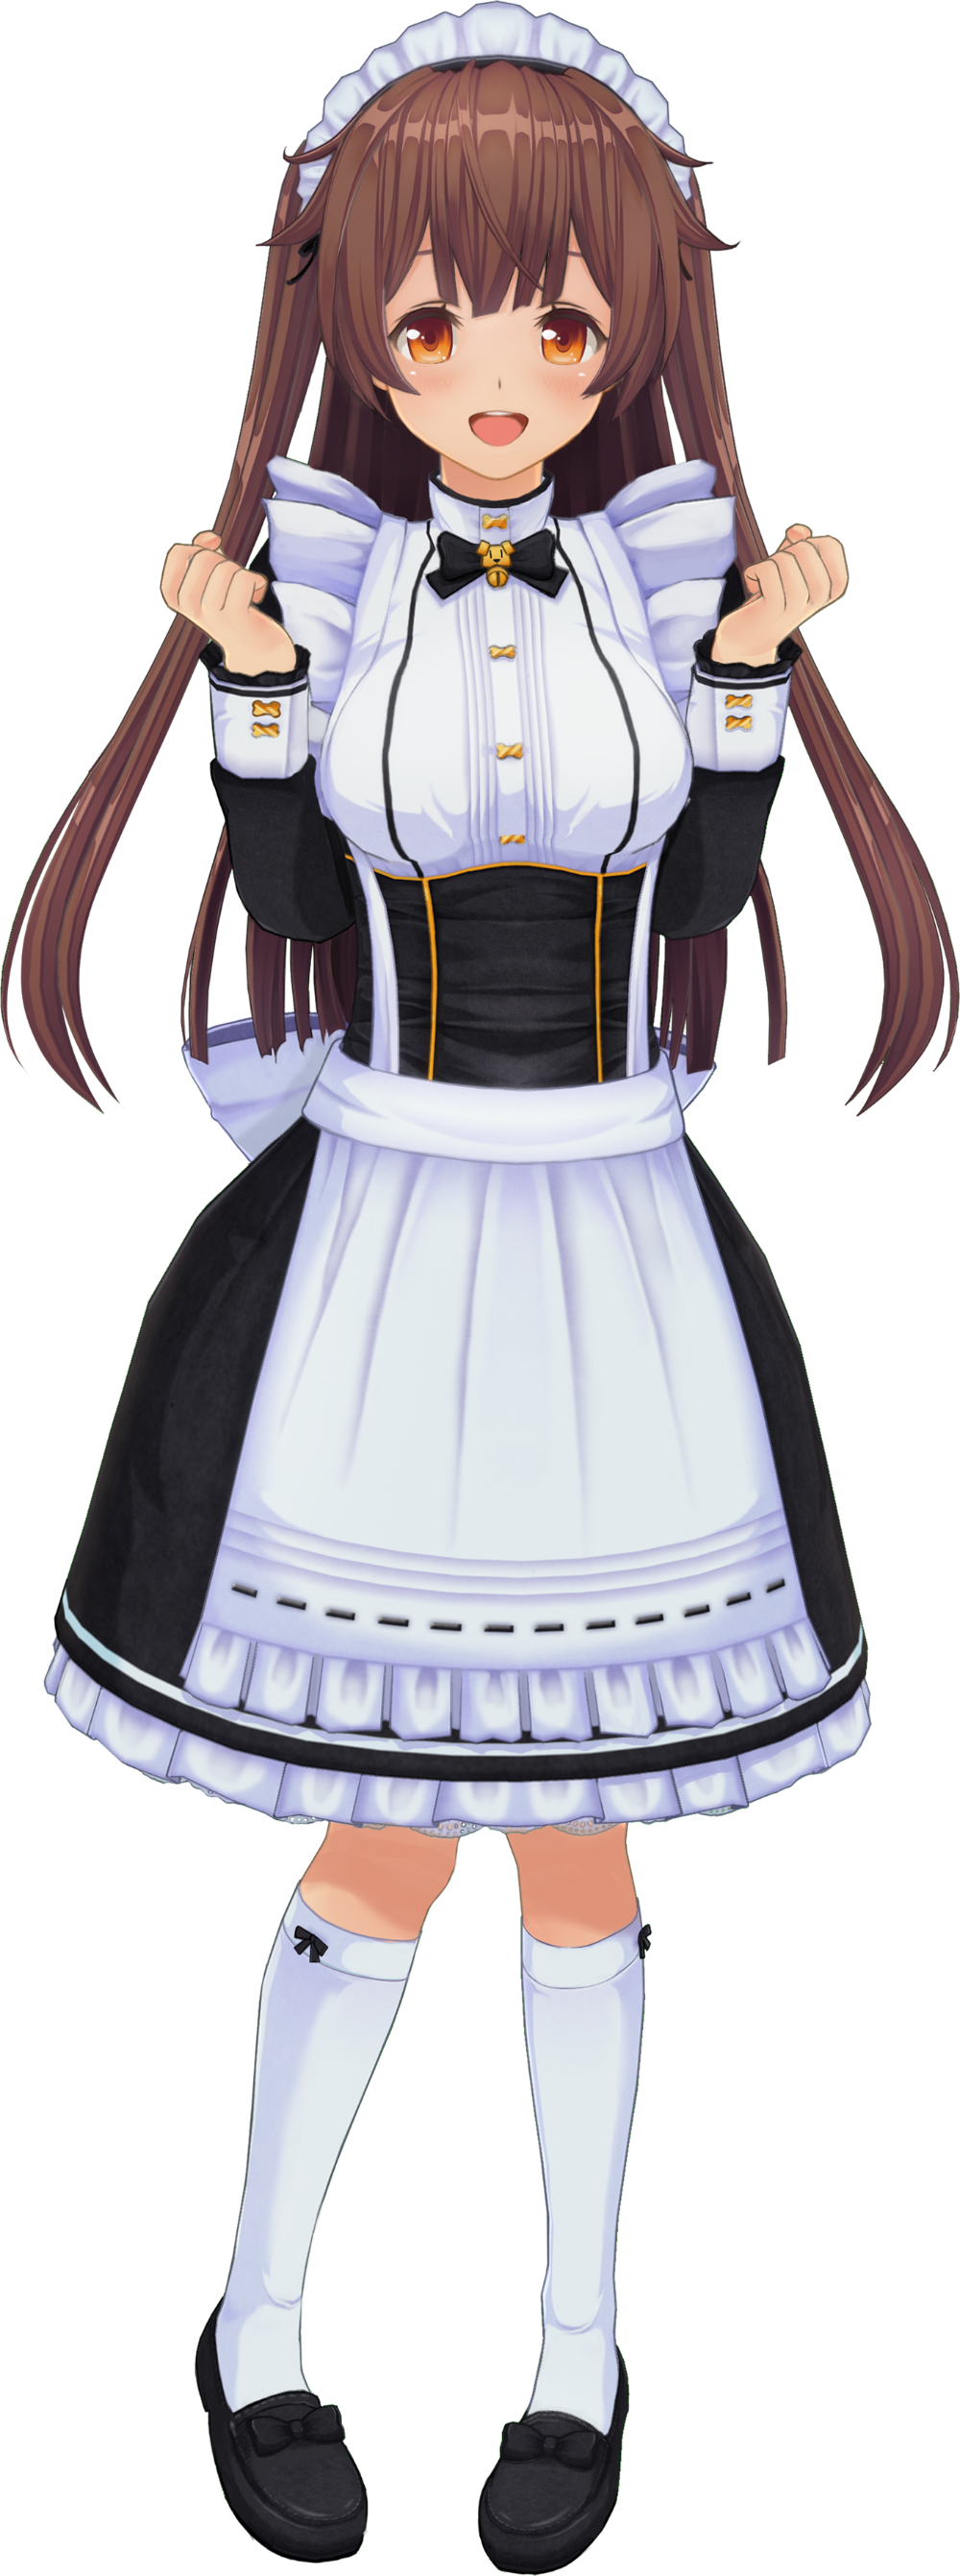 custom maid 3d 2 costume mod